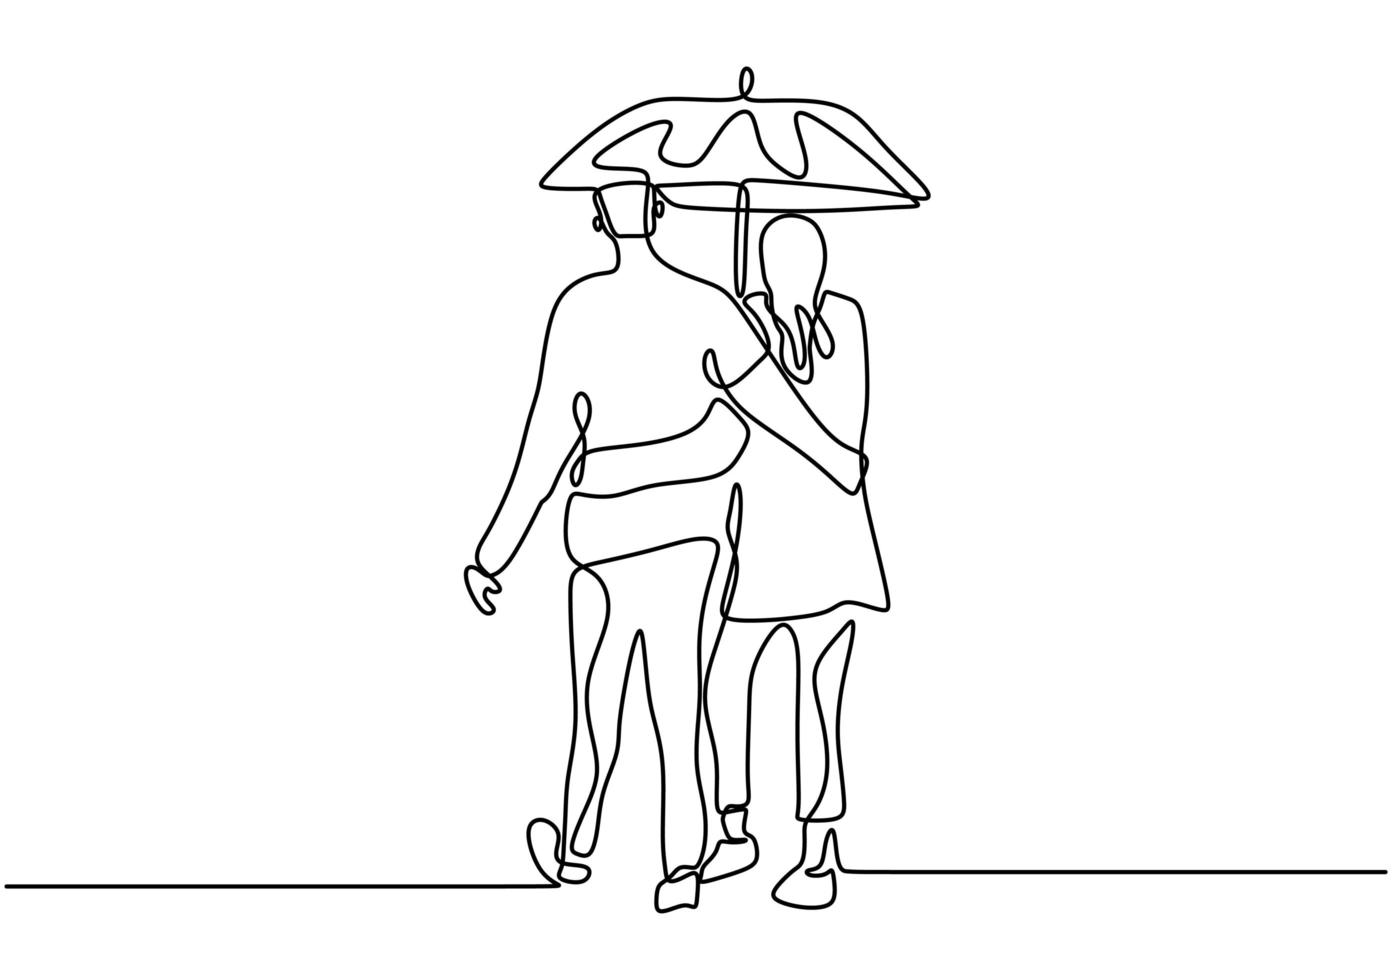 desenho de linha contínua. casal romântico abraçando e segurando o guarda-chuva. design de conceito de tema de amantes. vetor